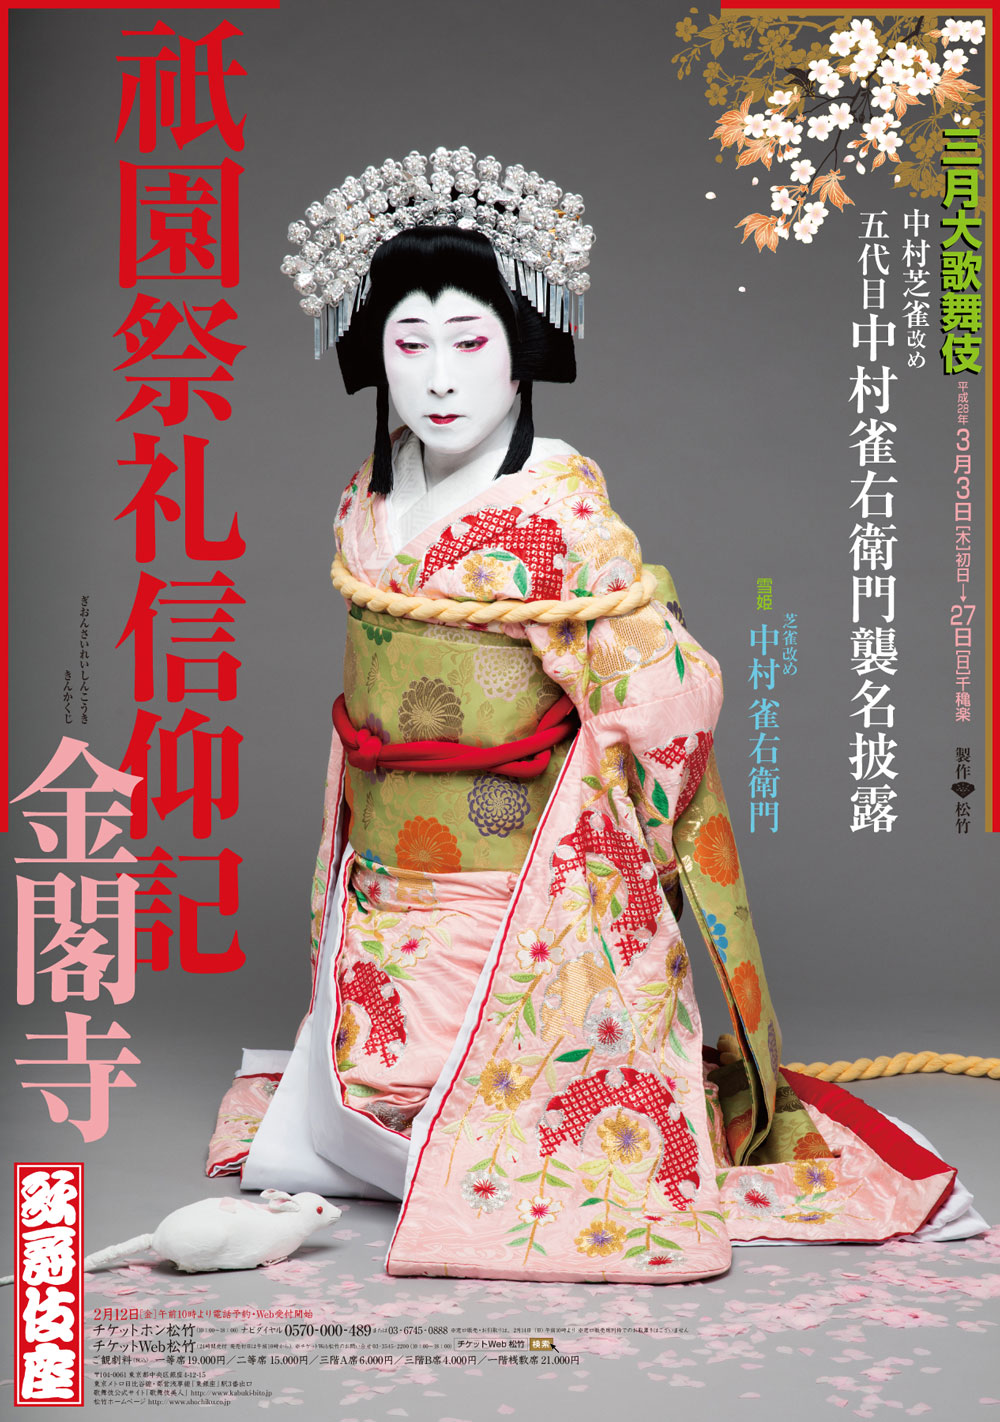 歌舞伎座「三月大歌舞伎」特別ポスター『祇園祭礼信仰記』